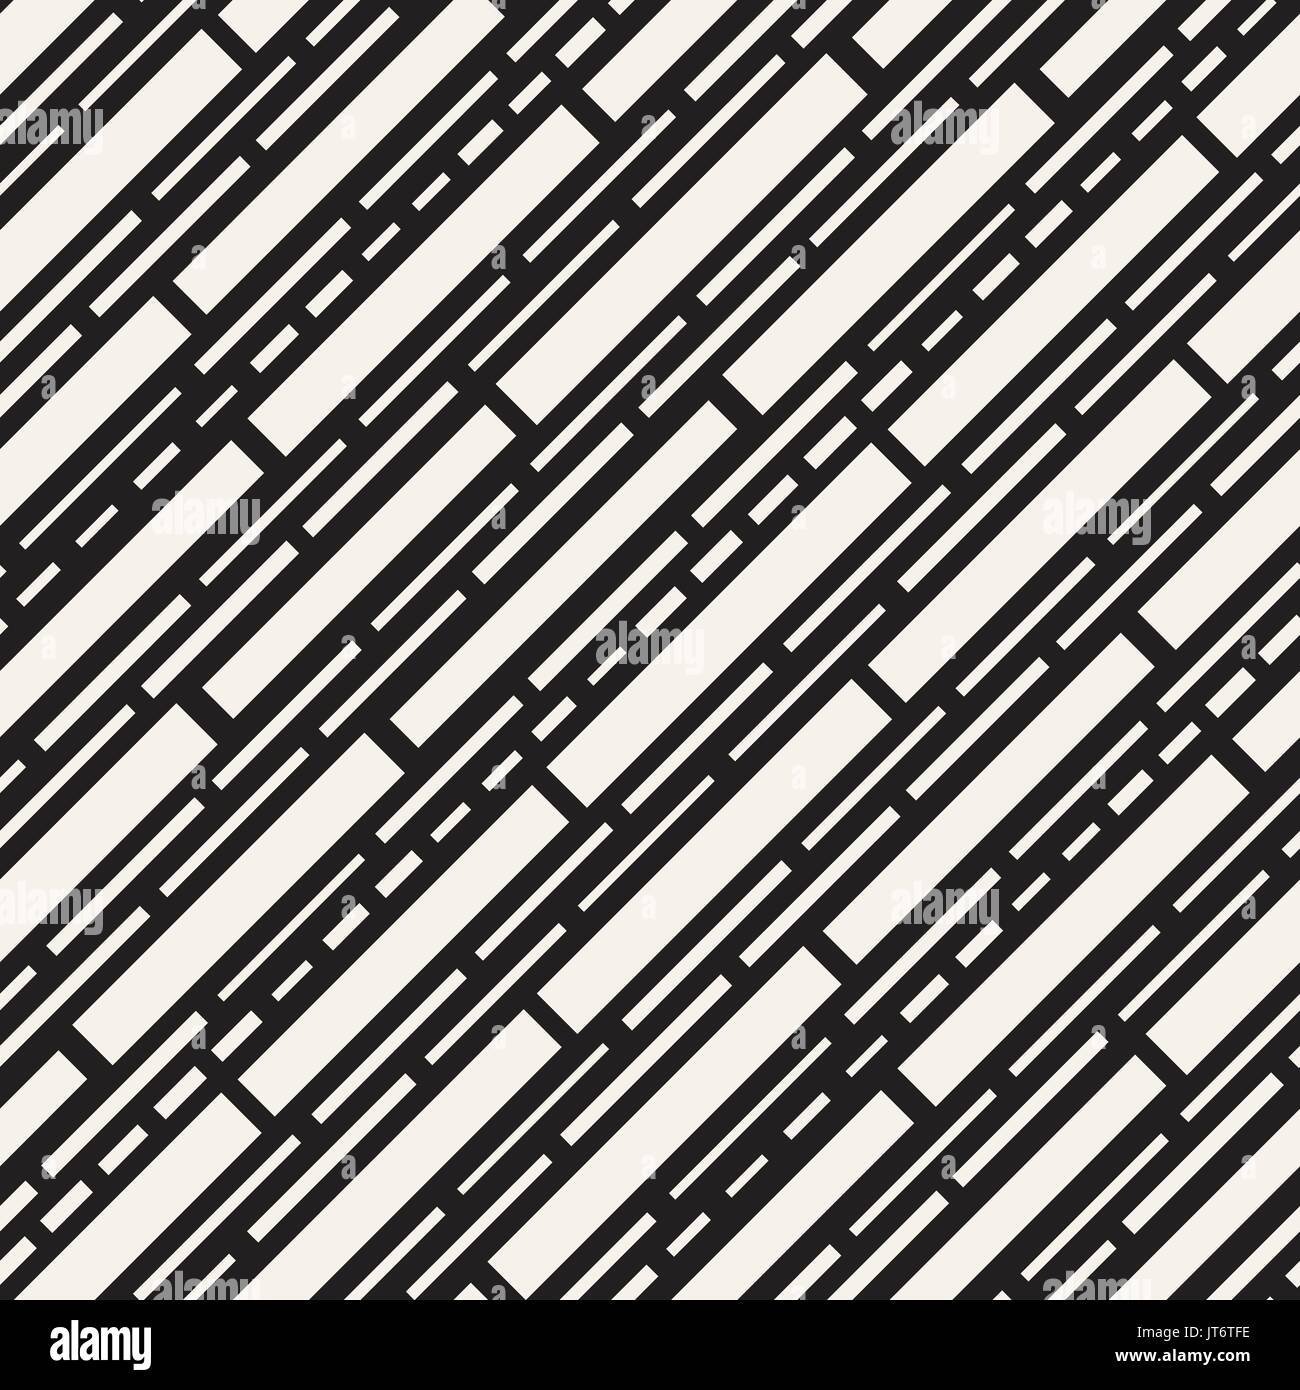 Schwarze und Weiße Unregelmäßige gestrichelte Linien Muster. Moderne abstrakte Vektor nahtlose Hintergrund. Stilvolle chaotischen Streifen Mosaik Stock Vektor